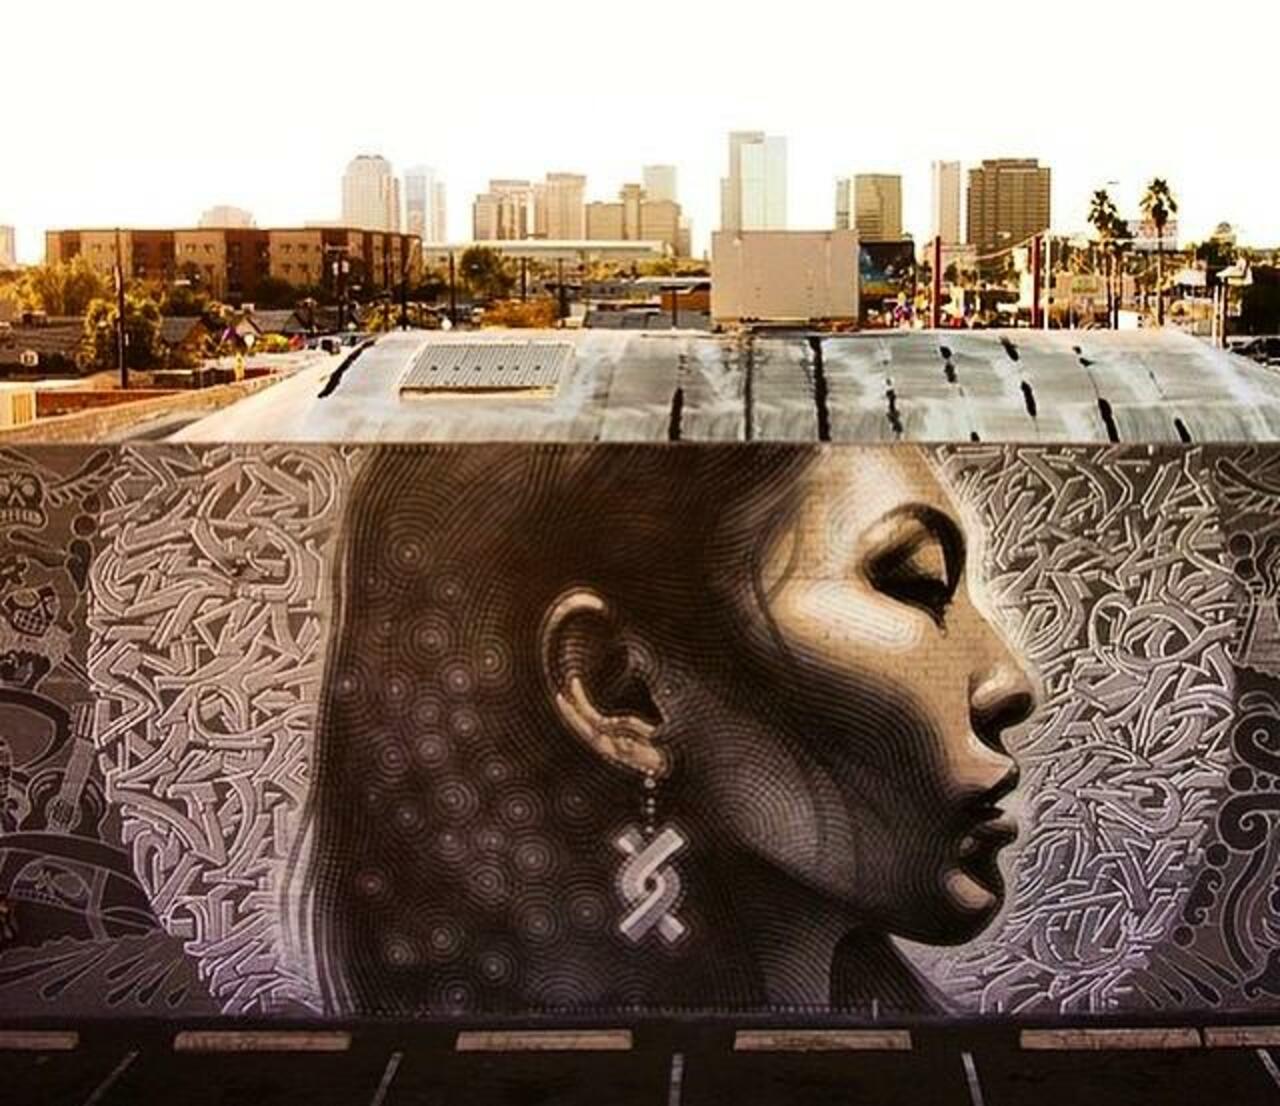 " Latest Street Art work by 
El Mac in Phoenix, Arizona 
#art #mural #graffiti 
#streetart 
http://t.co/ijuvM0yY3b"